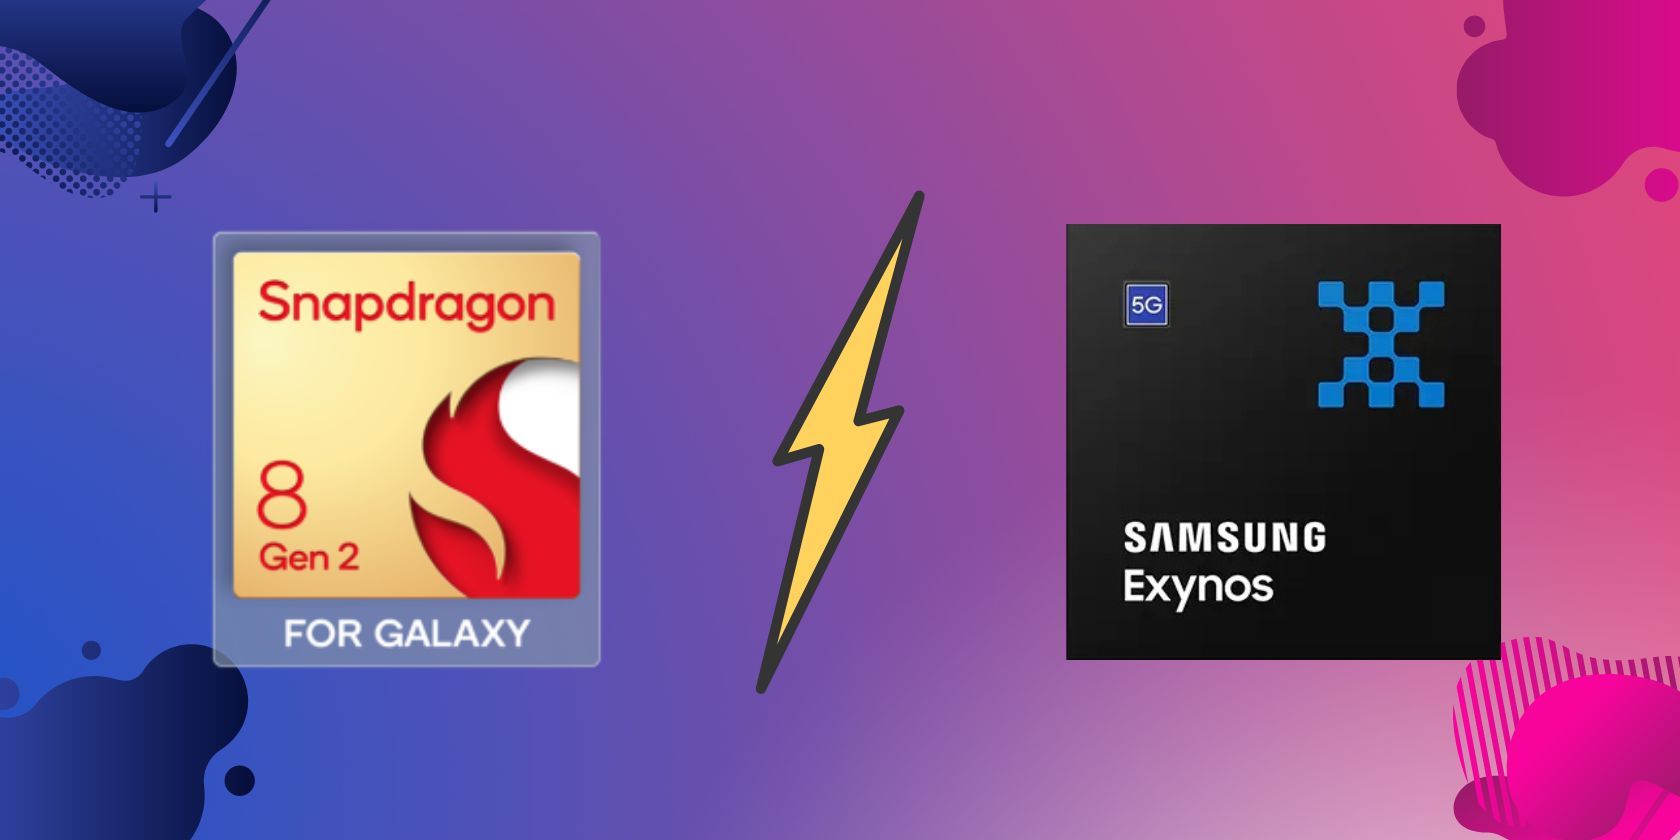 Snapdragon 8 Gen 2 for Galaxy alongside Samsung Exynos